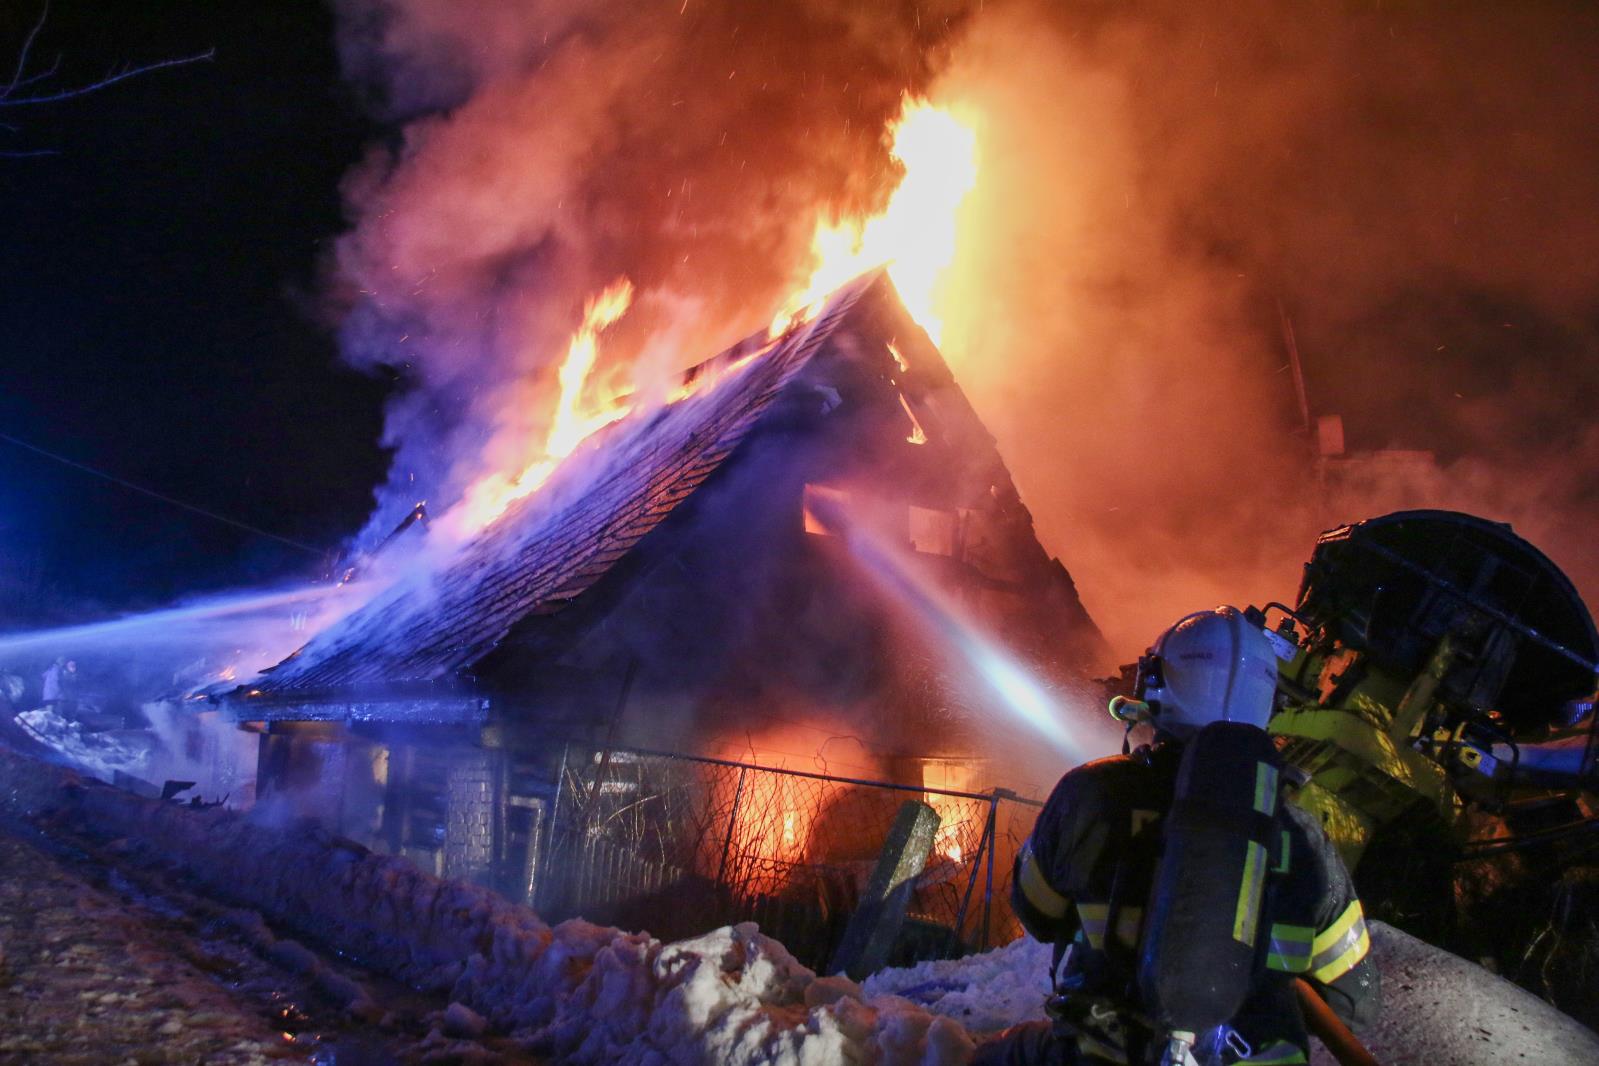 LIK_Požár domu v obci Plavy_hasič míří proud vody do okna hořícího objektu.jpg